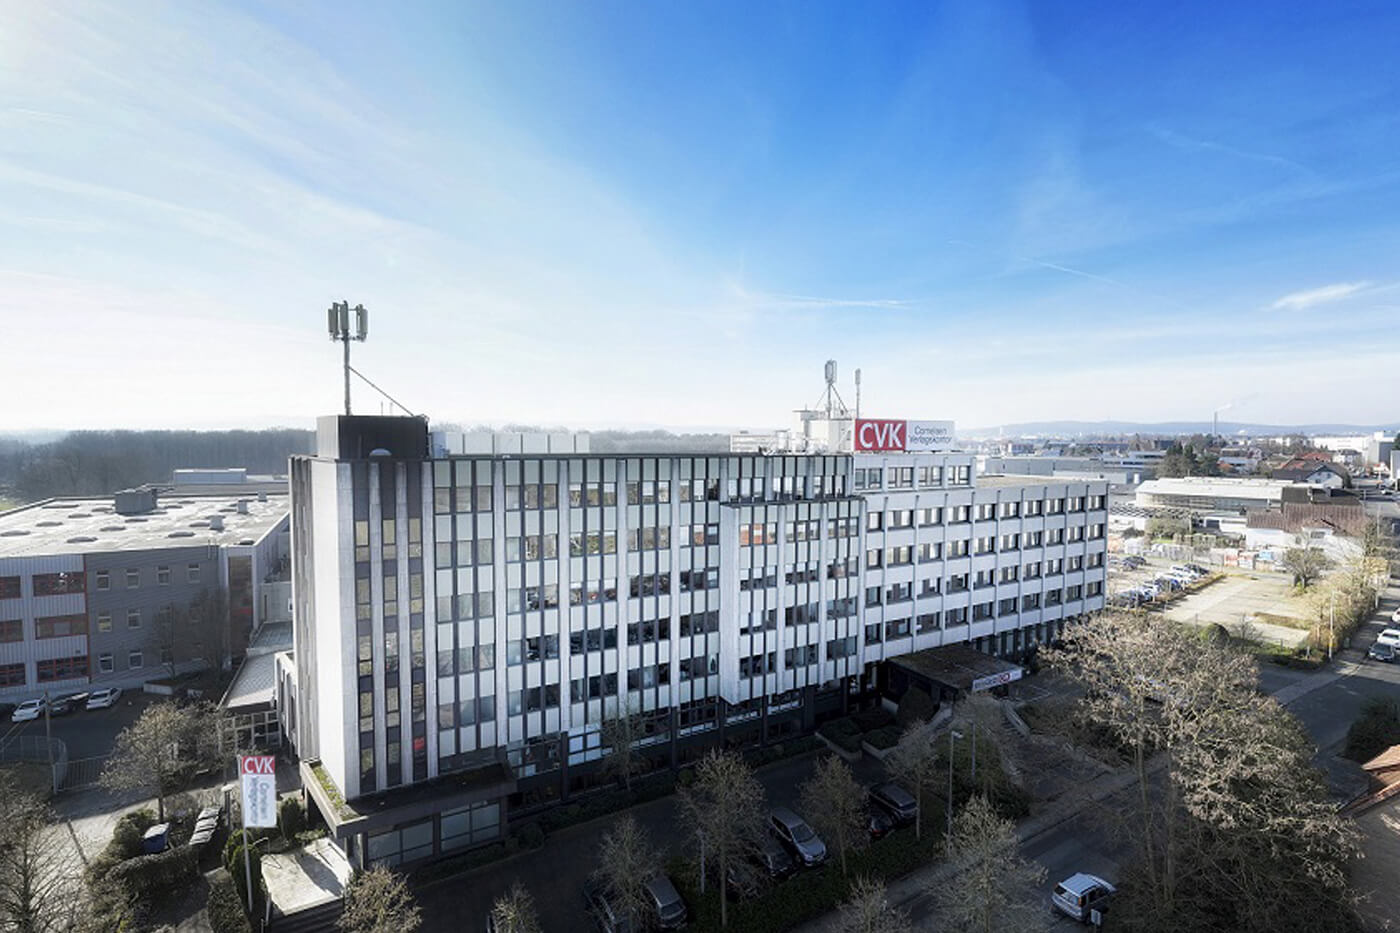 Vermietobjekt CVK-Immobilie in Bielefeld - Büroflächen